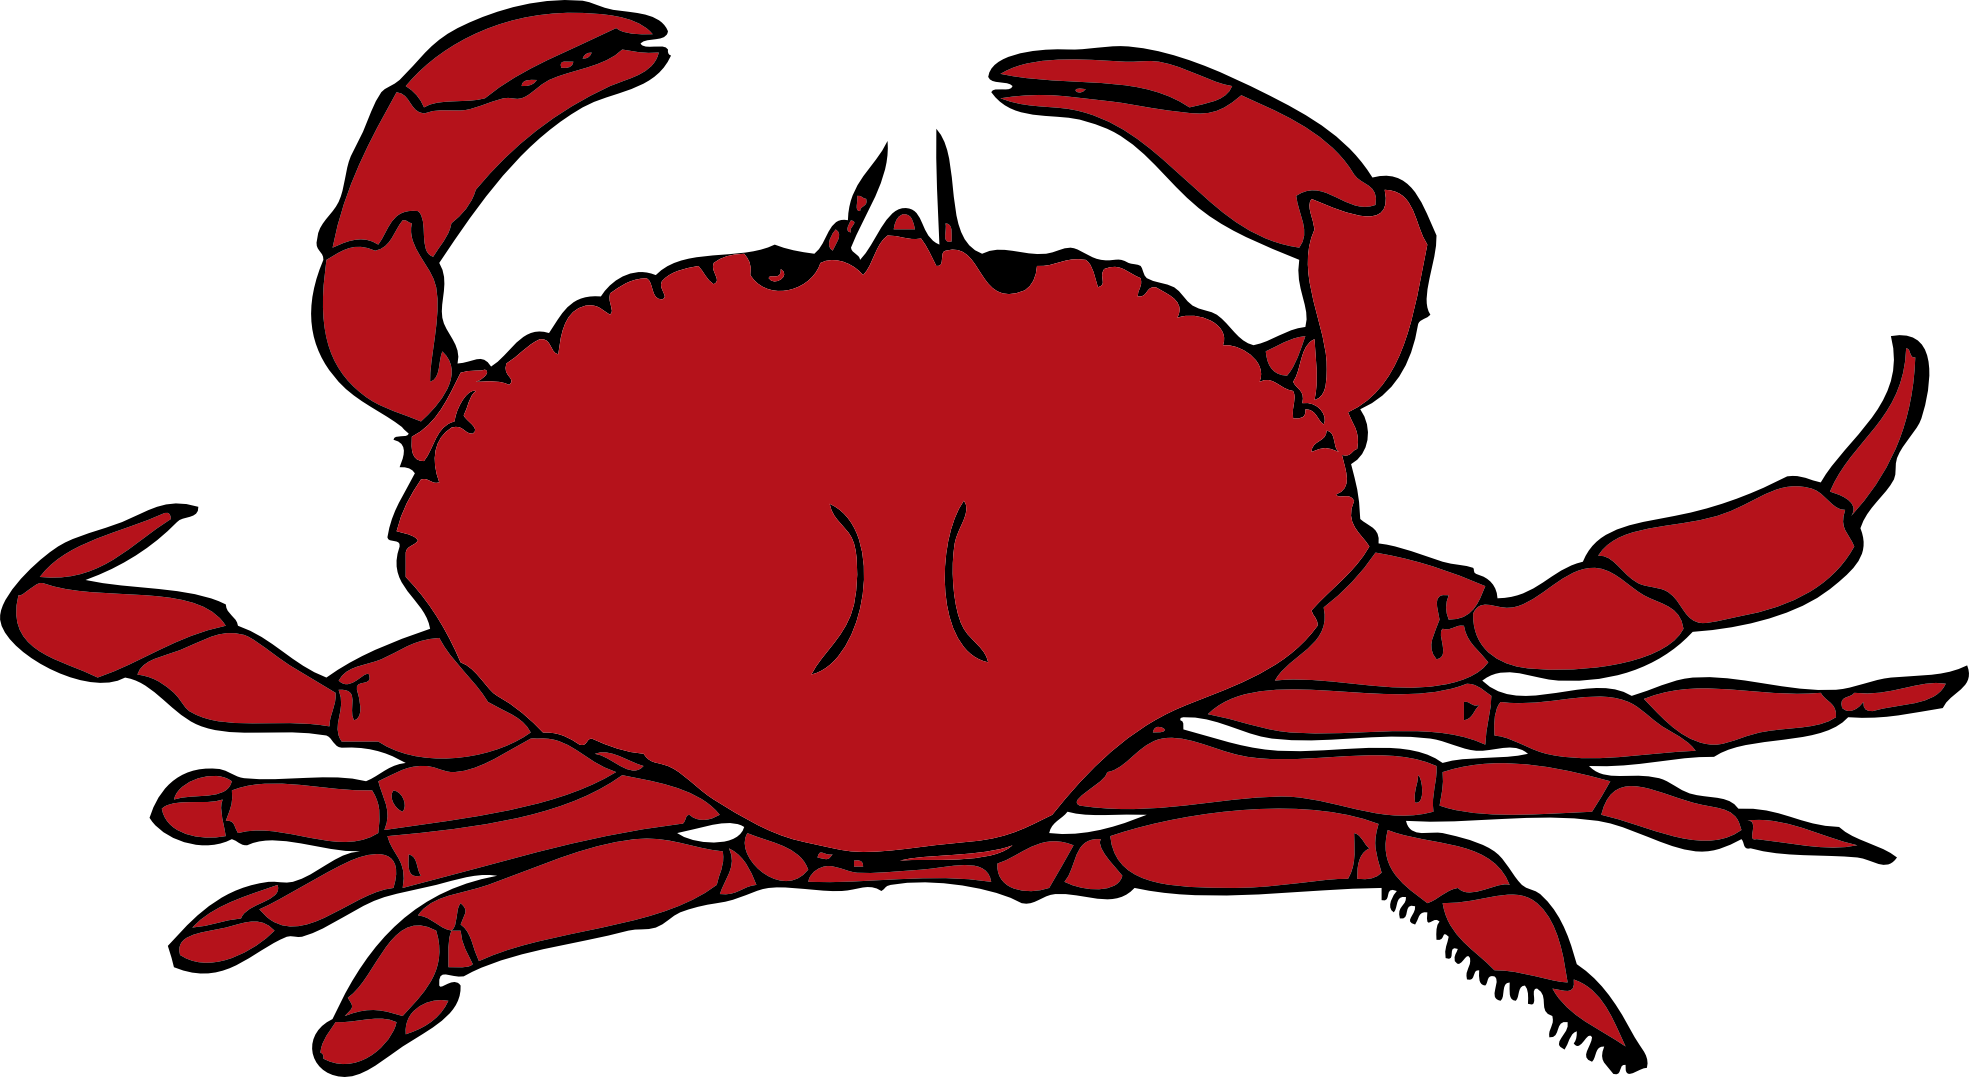 Crab Clip Art Cartoon - Free Clipart Images